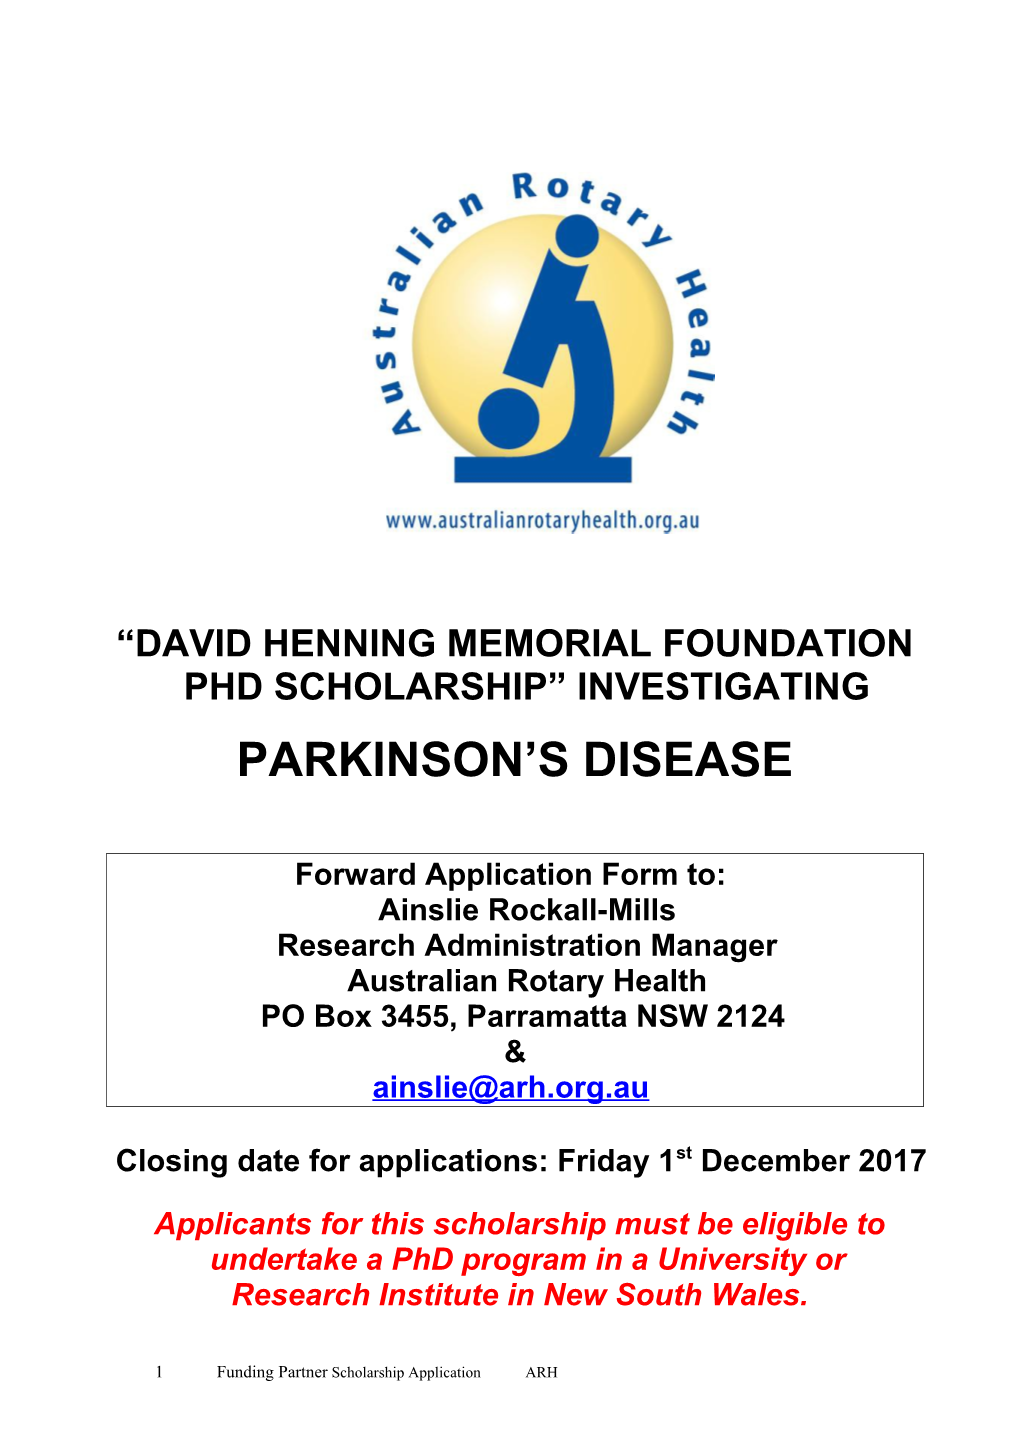 David Henning Memorial Foundation Phd Scholarship Investigating